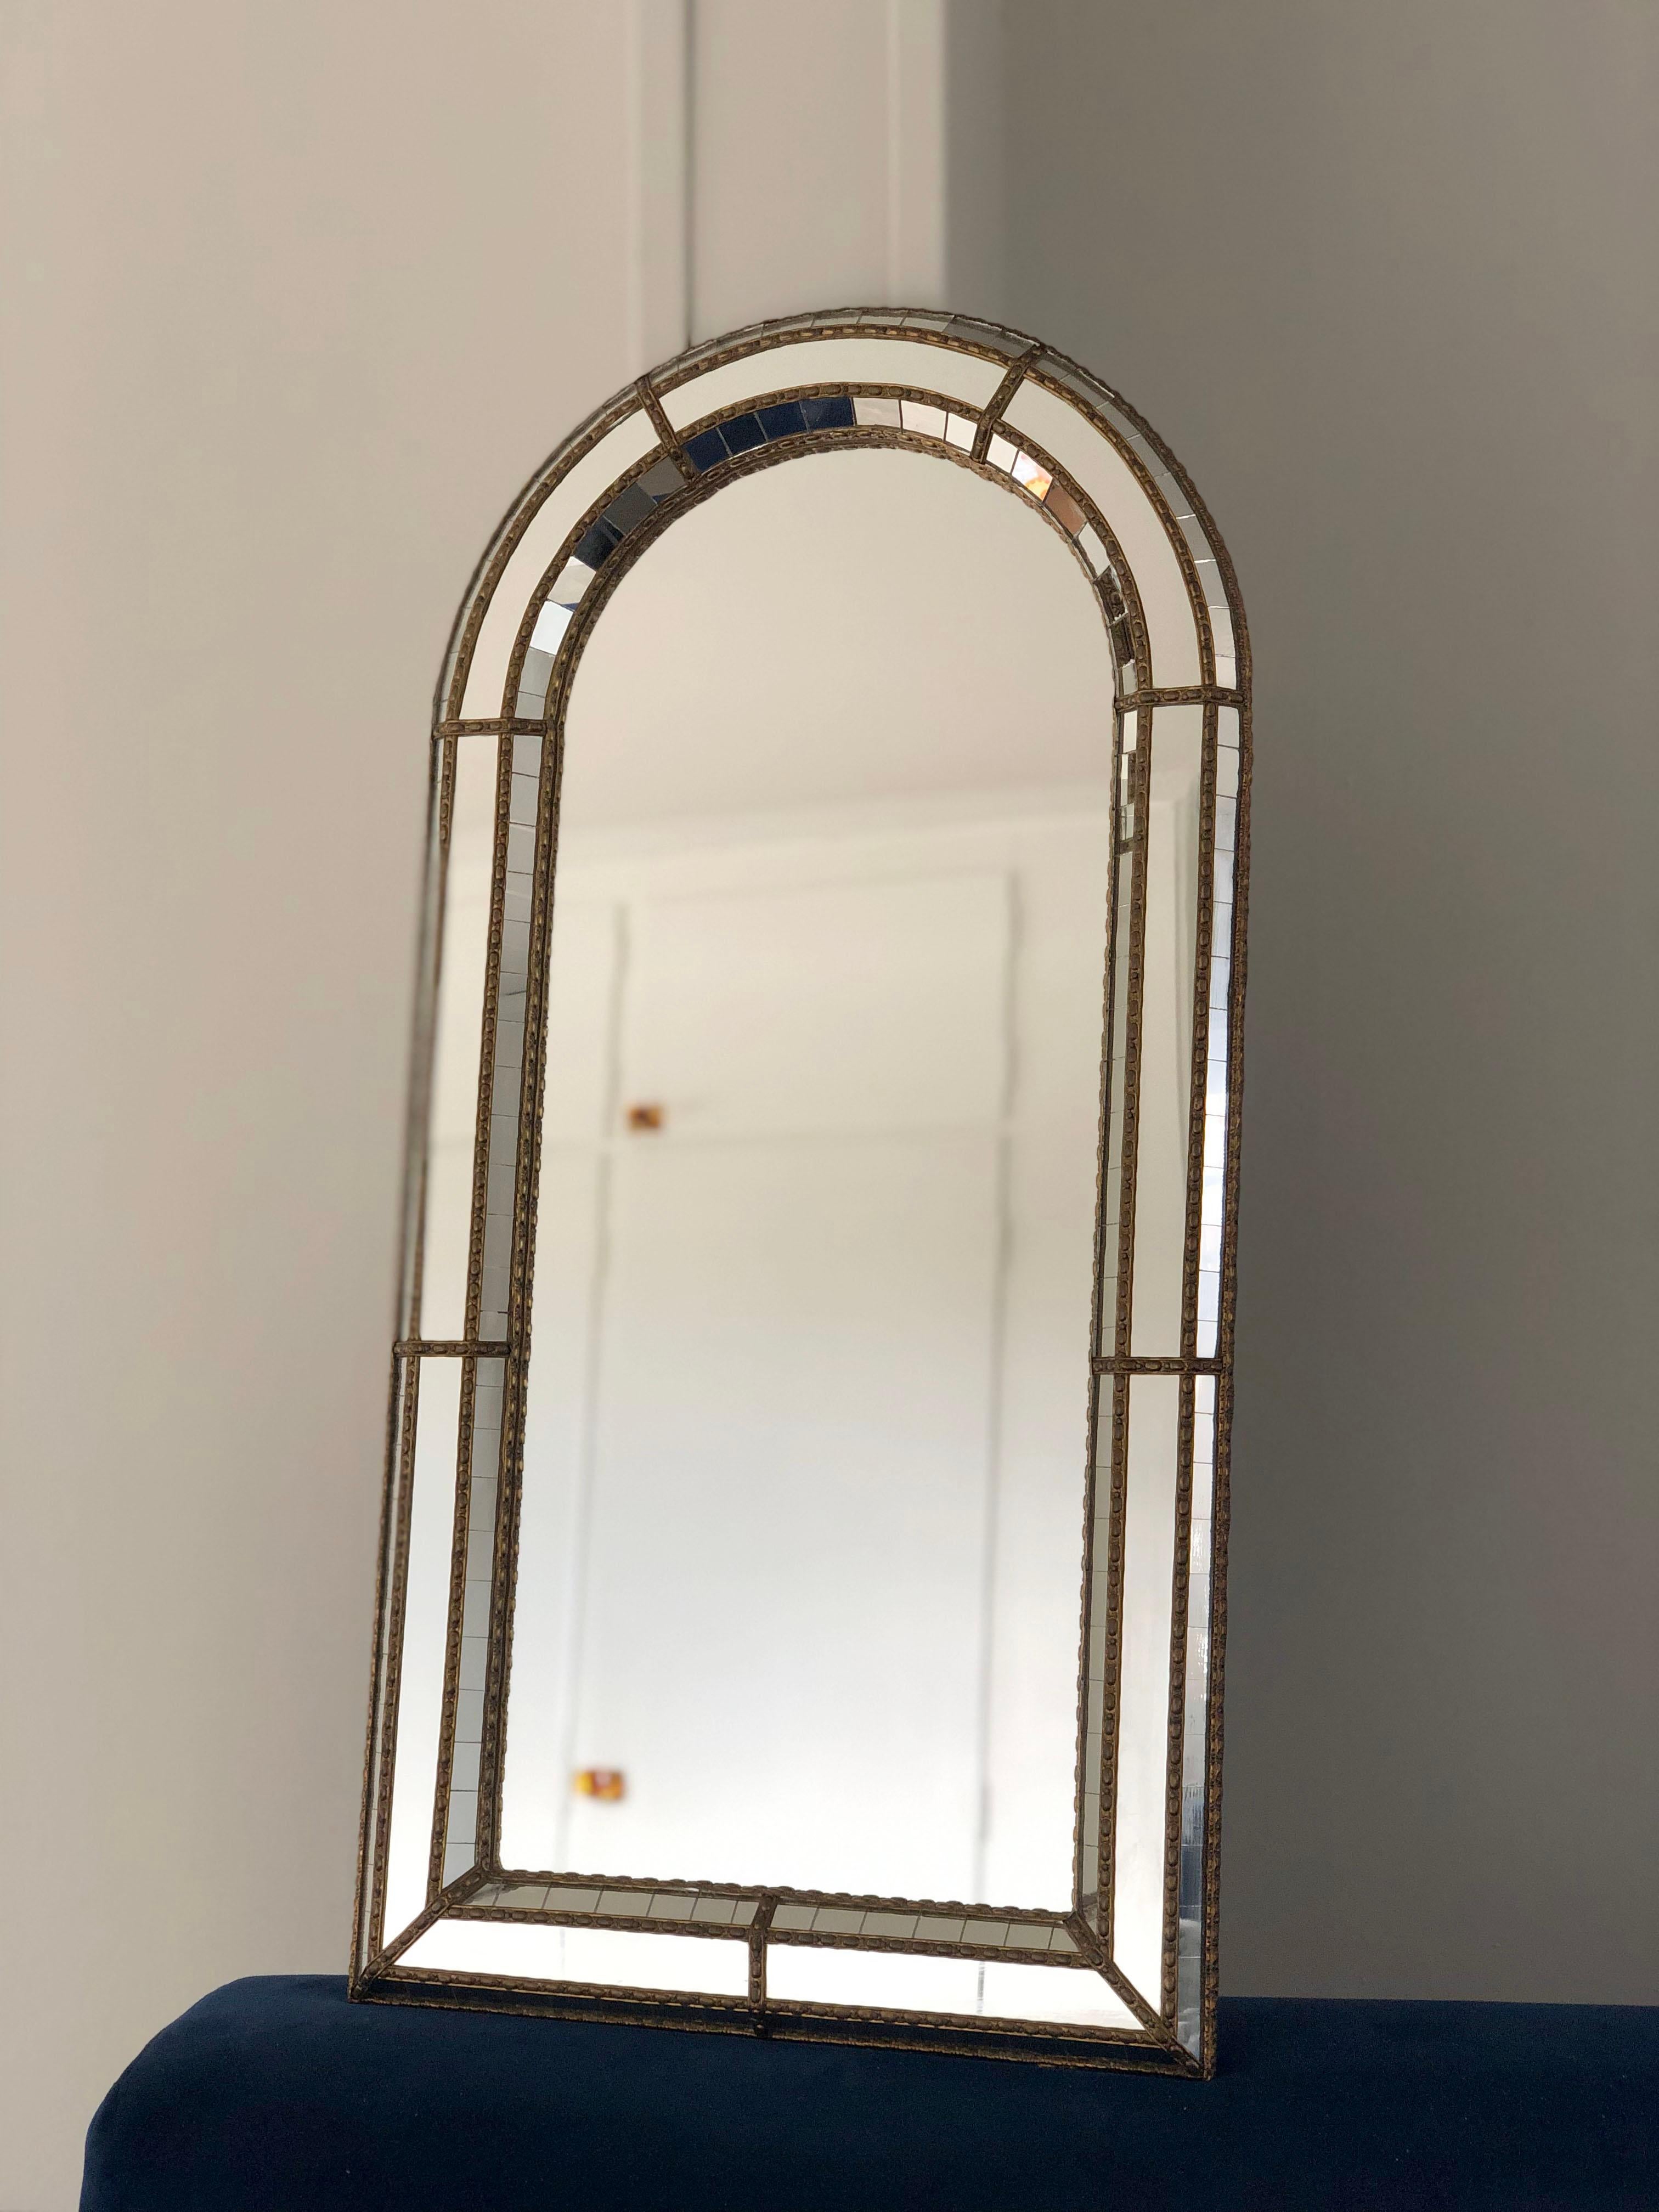 2 identische schöne spanische Spiegel mit einem venezianischen Glasrahmen mit einem goldenen Messingstreifen. Der Rahmen ist mit kleinen Kristallen außen und innen und größeren Kristallen in der Mittellinie versehen. Der Messingstreifen hält die